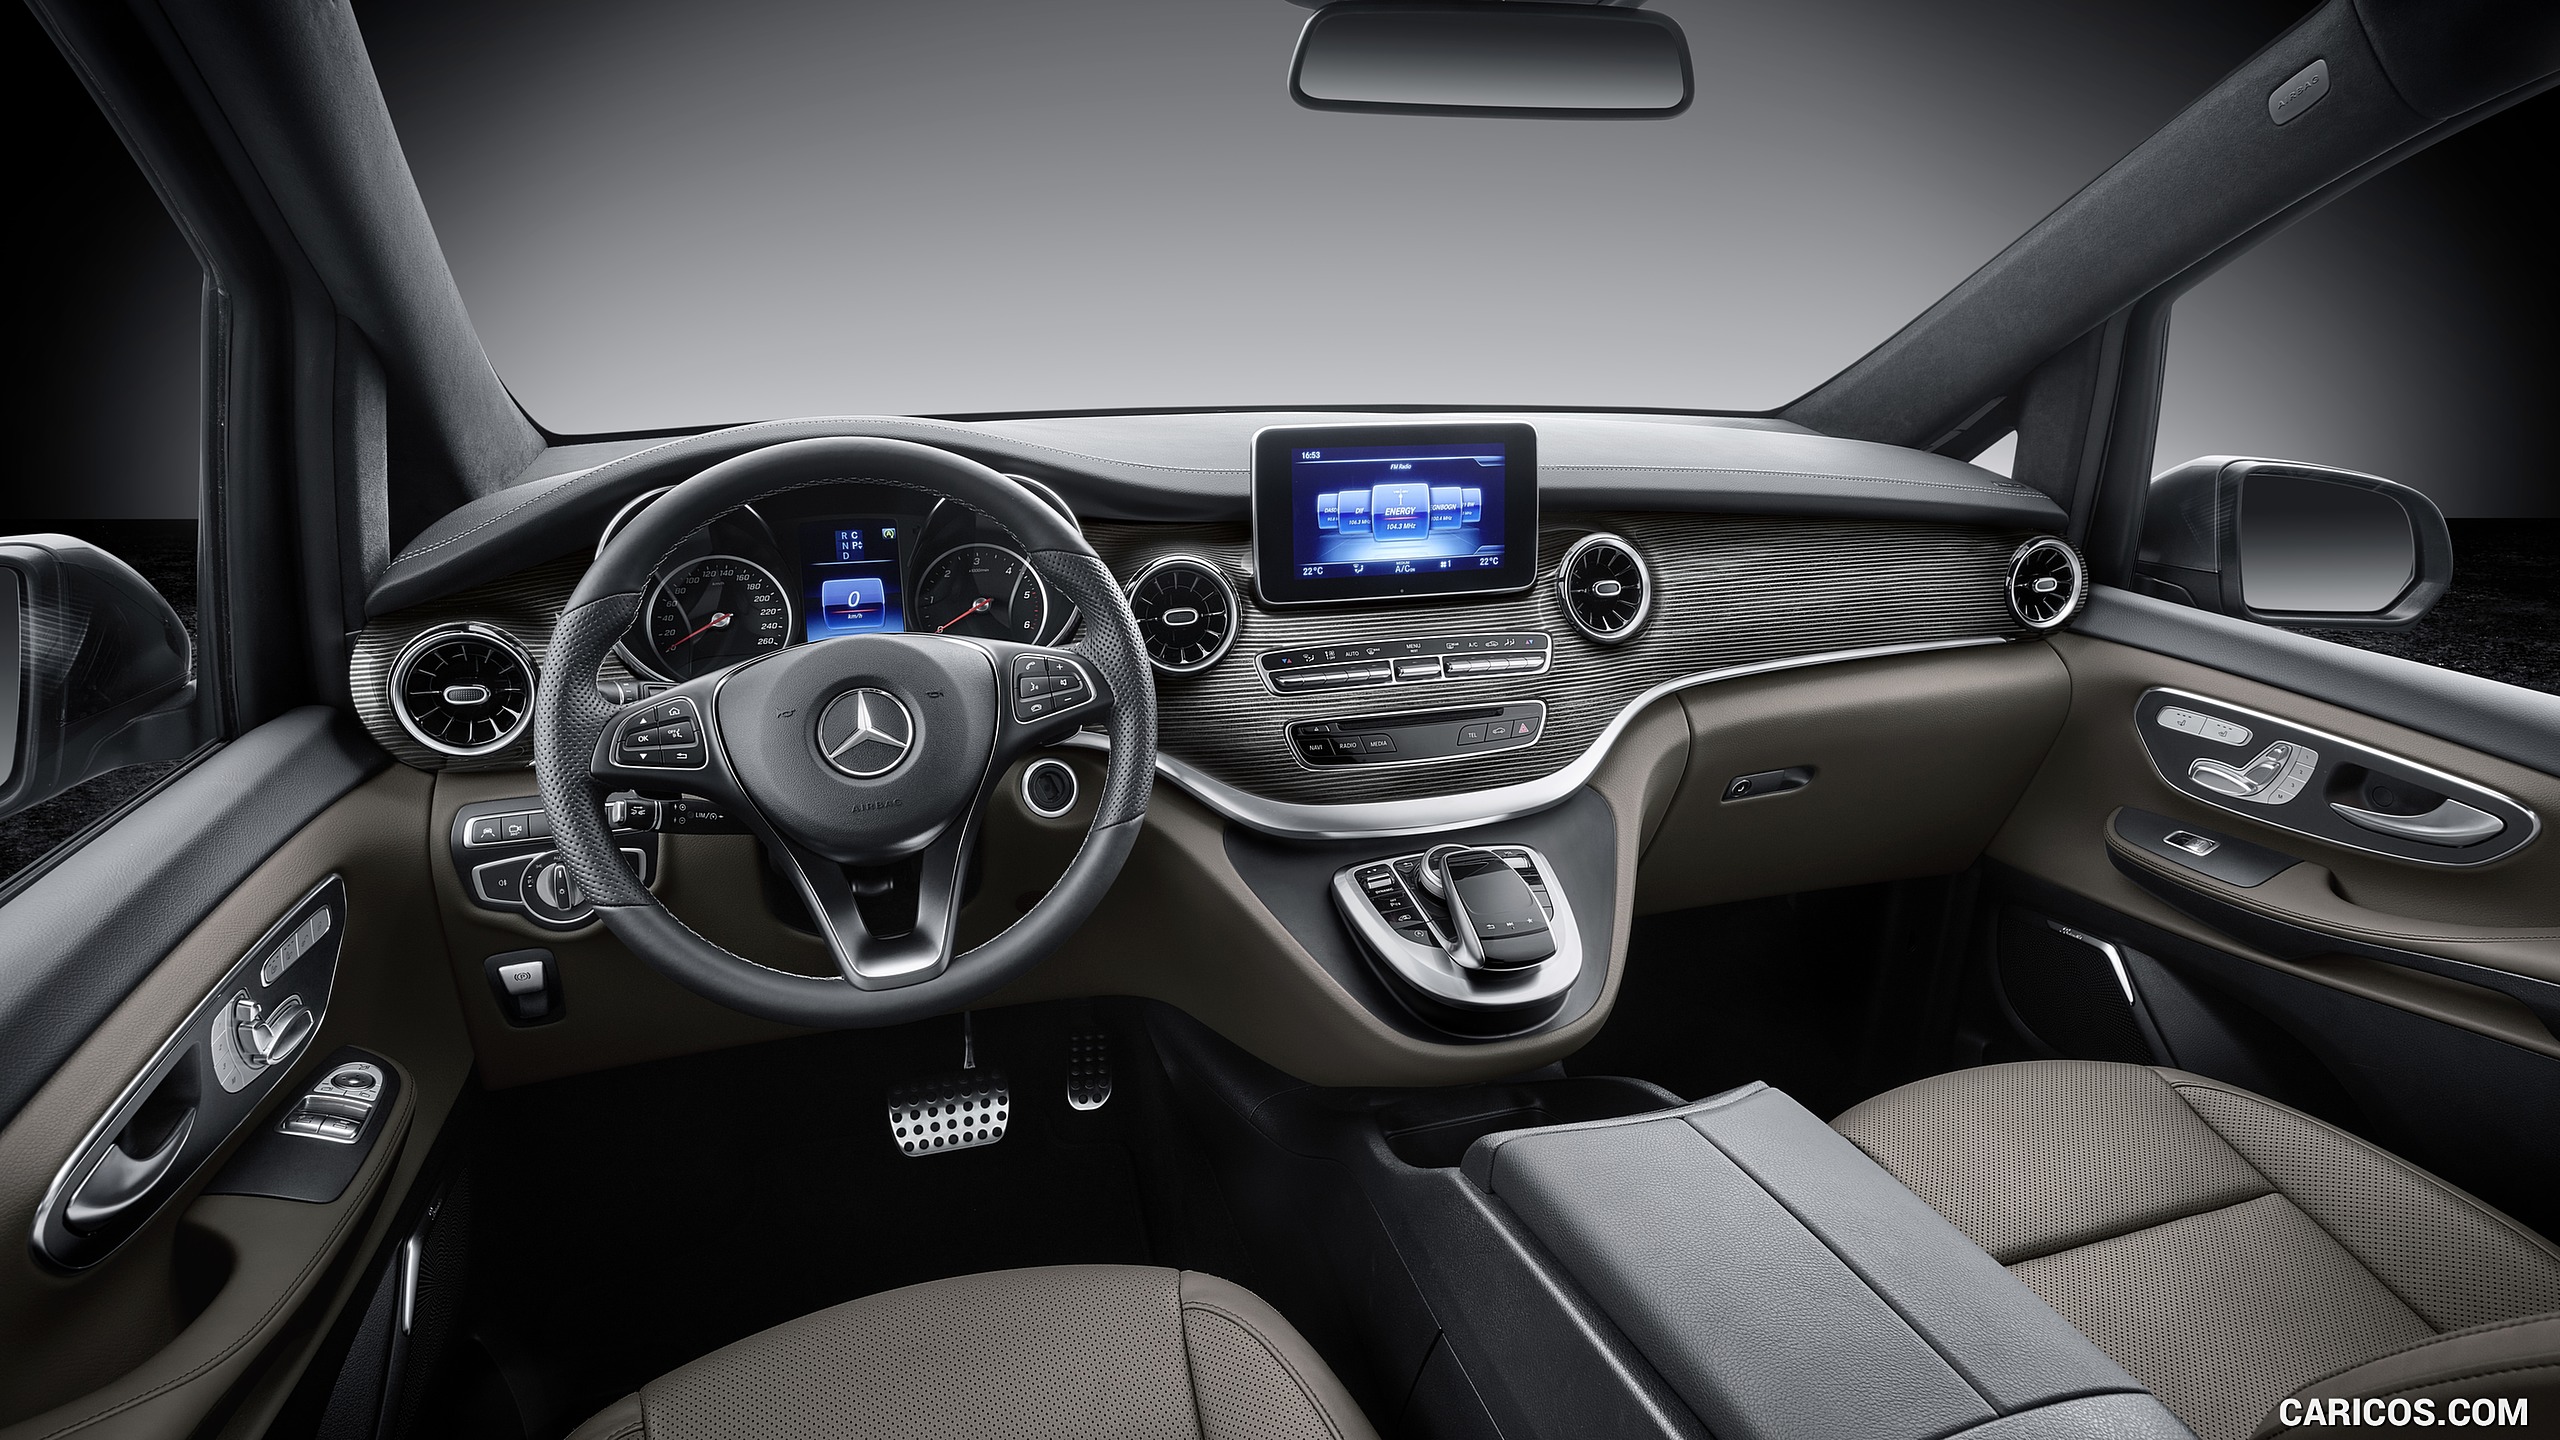 2019 Mercedes Benz V Class Exclusive Line Interior Hd